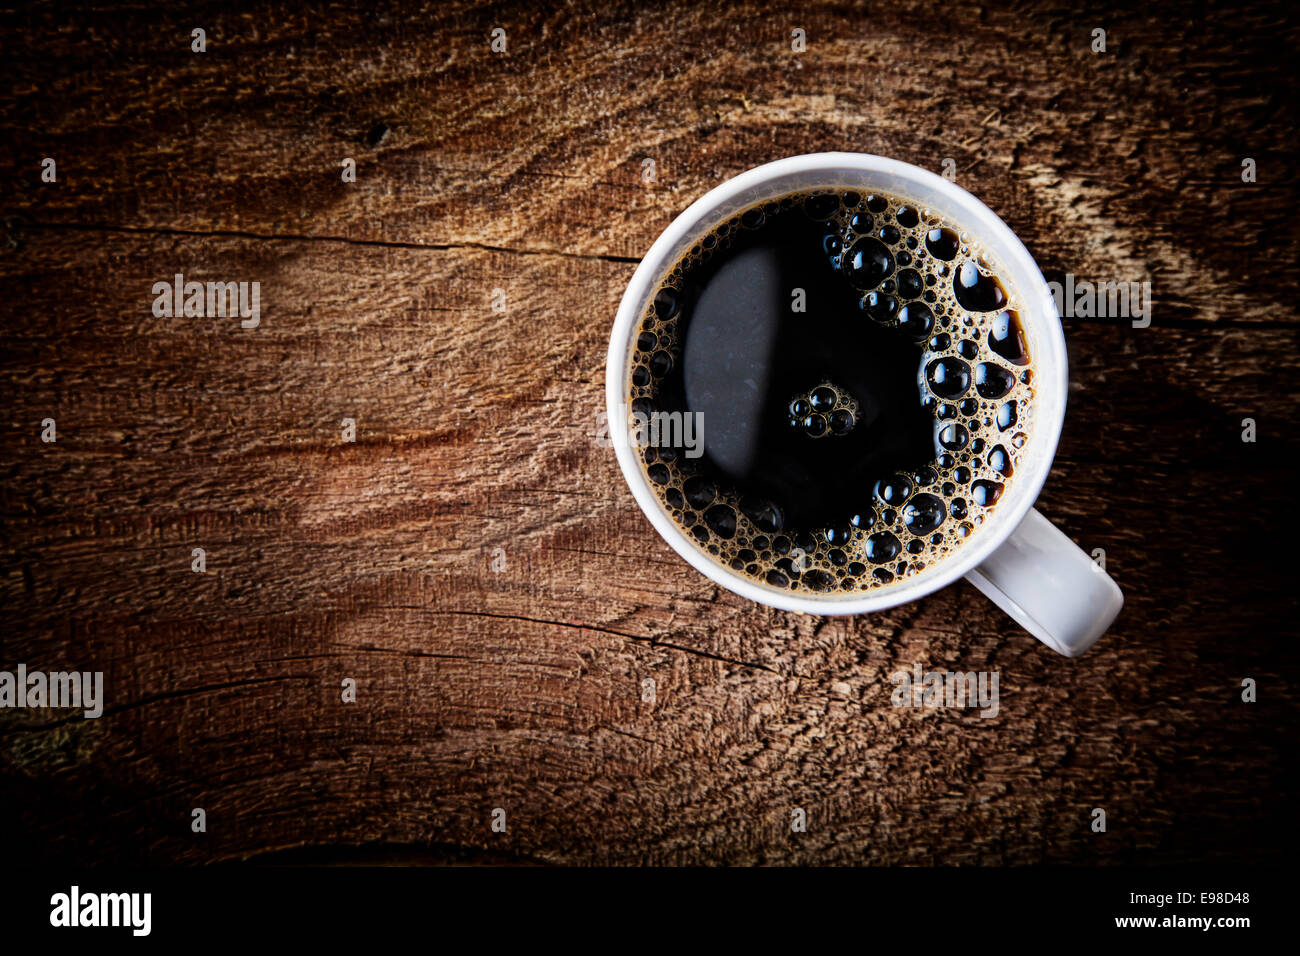 Cerrar vista aérea de una espumosa taza de fuerte café espresso en una superficie de madera con textura rugosa viñeteado oscuro y un resaltado alrededor de la taza, con copyspace Foto de stock